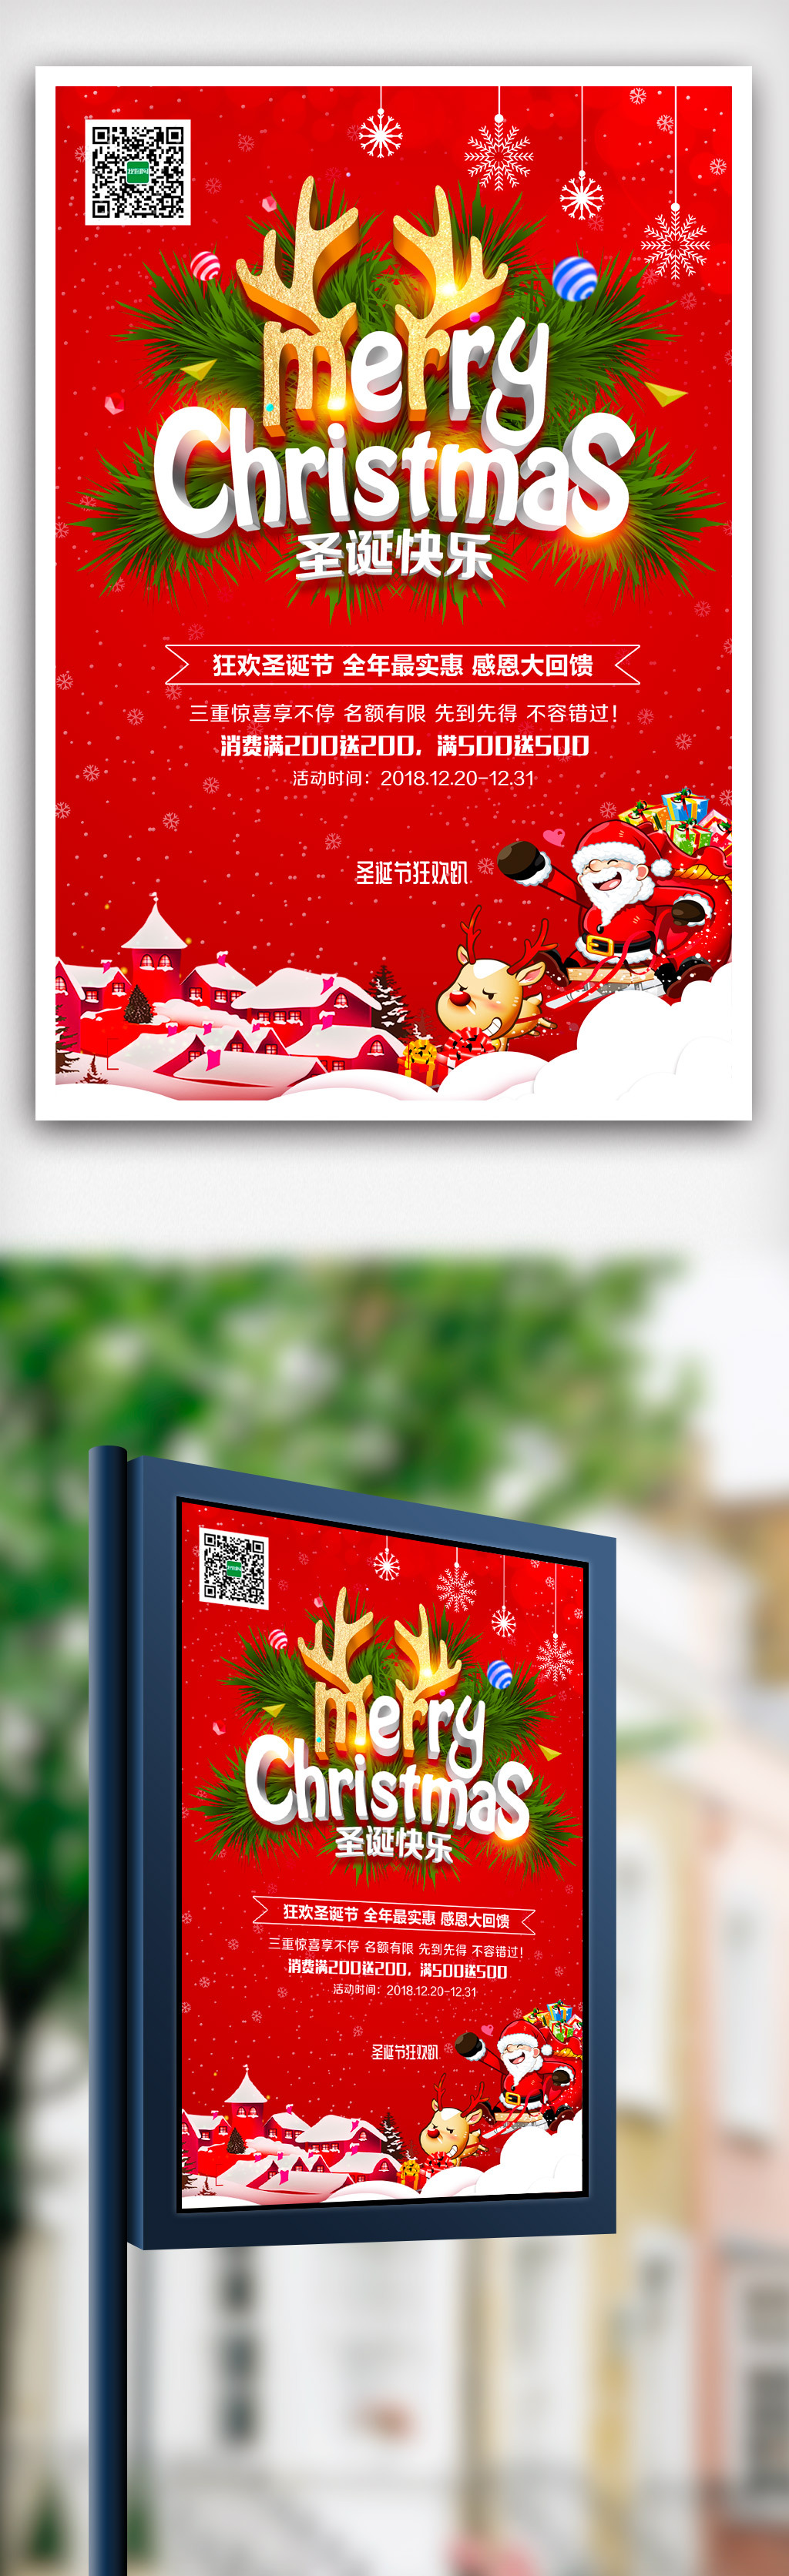 红色大气卡通圣诞节促销海报模版.psd图片